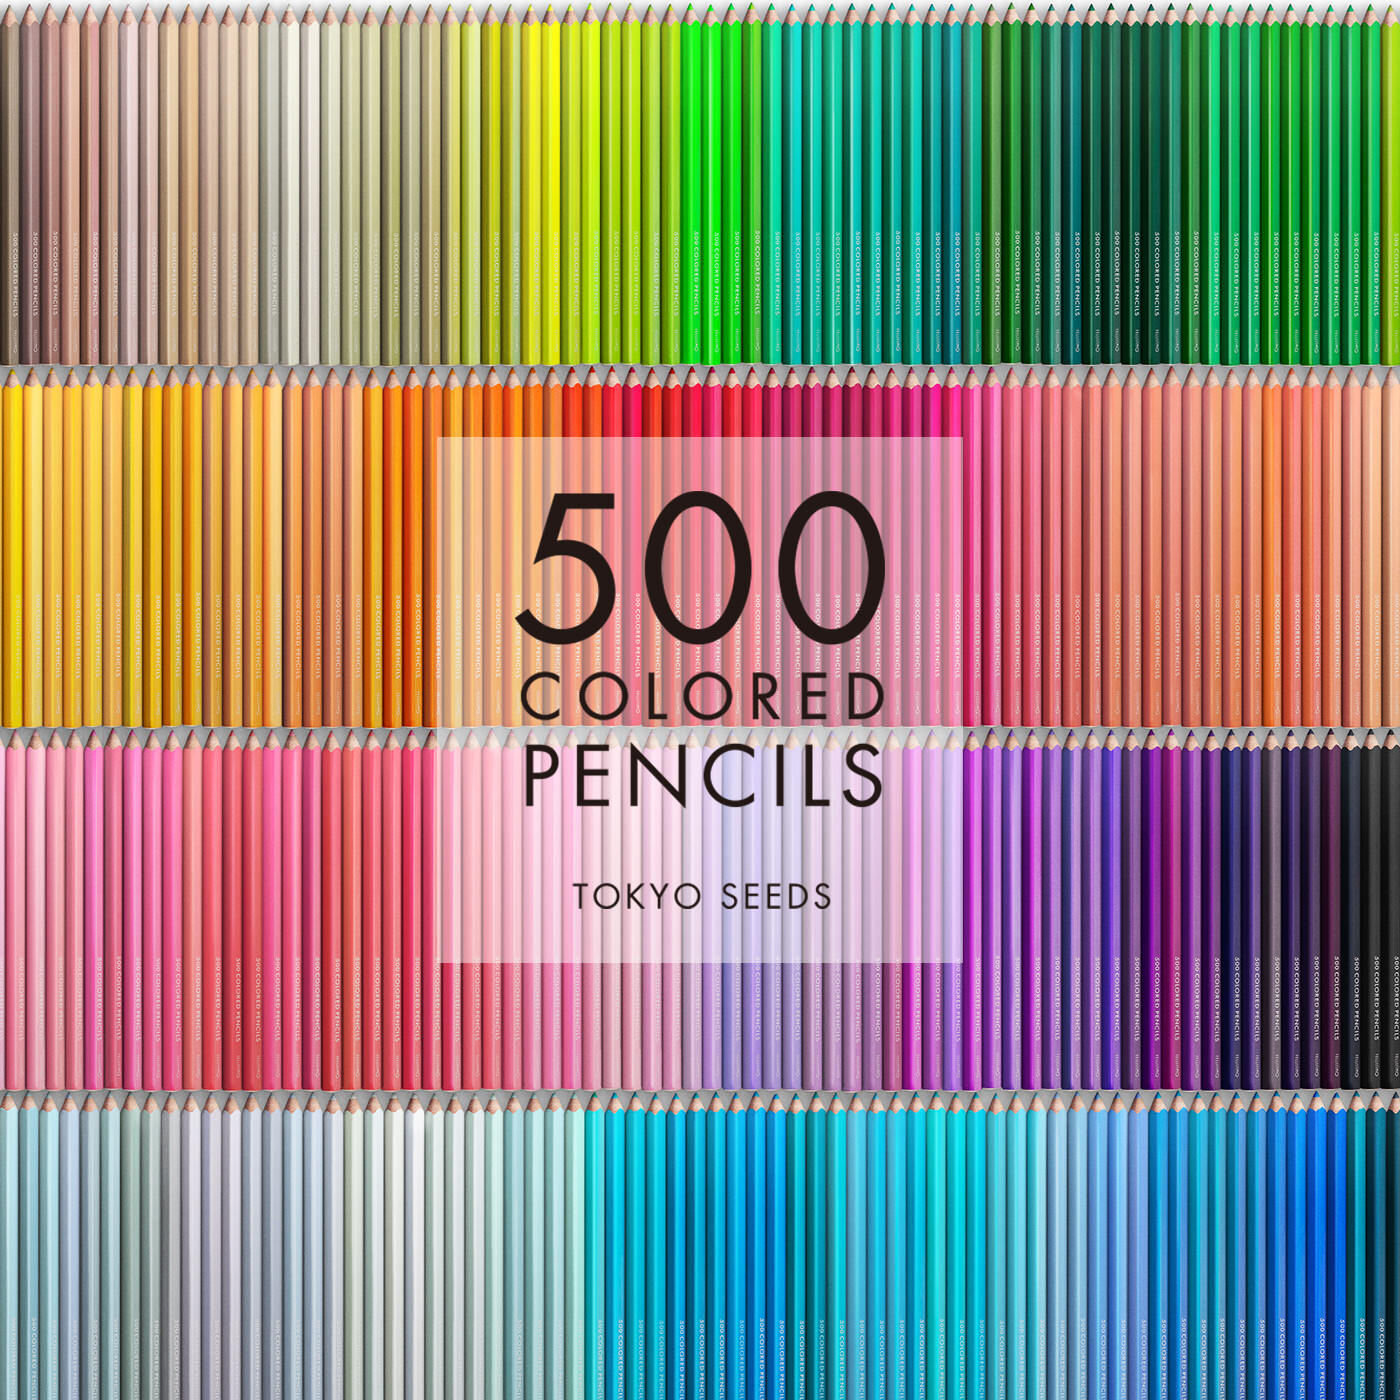 Real Stock|【184/500 WILD WILLOW】500色の色えんぴつ TOKYO SEEDS|1992年、世界初の「500色」という膨大な色数の色えんぴつが誕生して以来、その販売数は発売当初から合わせると、世界55ヵ国10万セット以上。今回、メイド・イン・ジャパンにこだわり、すべてが新しく生まれ変わって登場しました。